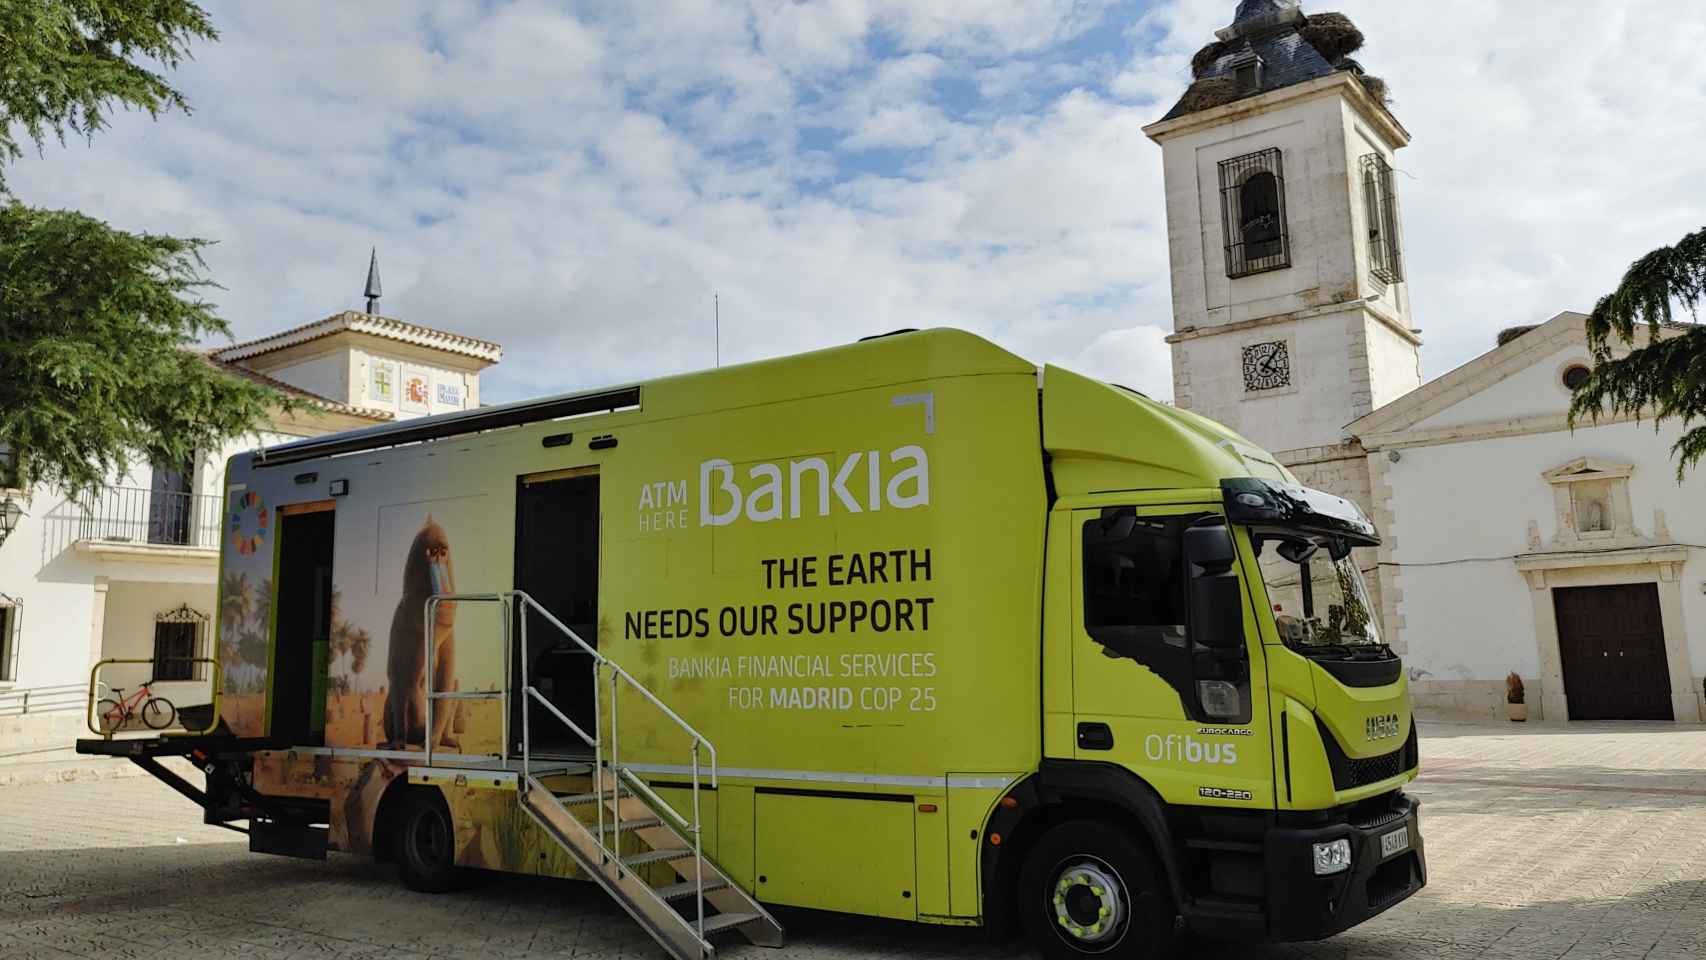 Ofibus de Bankia.